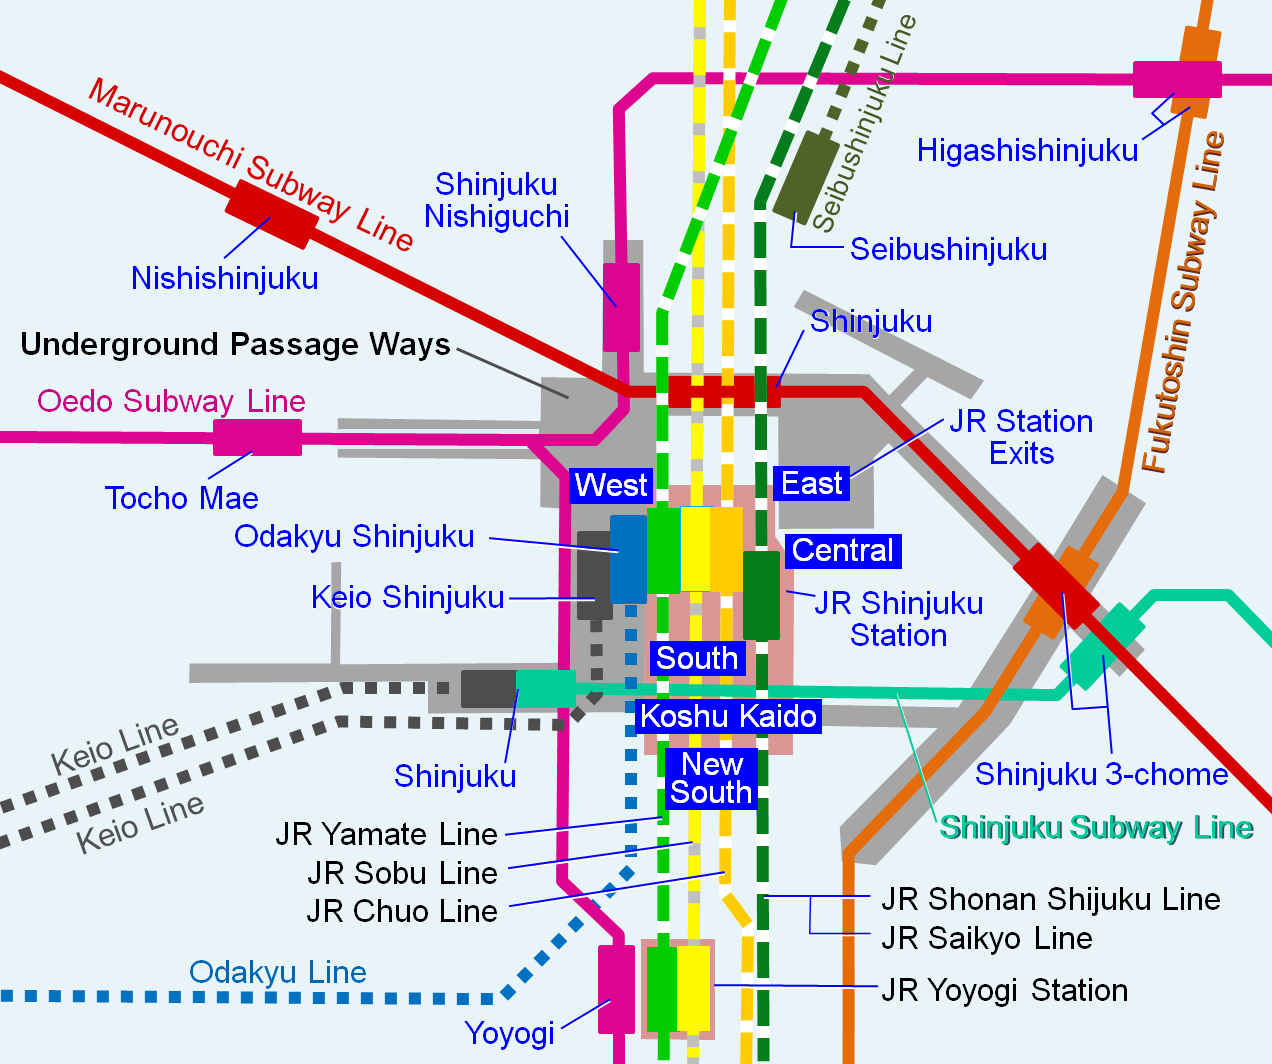 Railway Lines crossing at Shinjuku Station